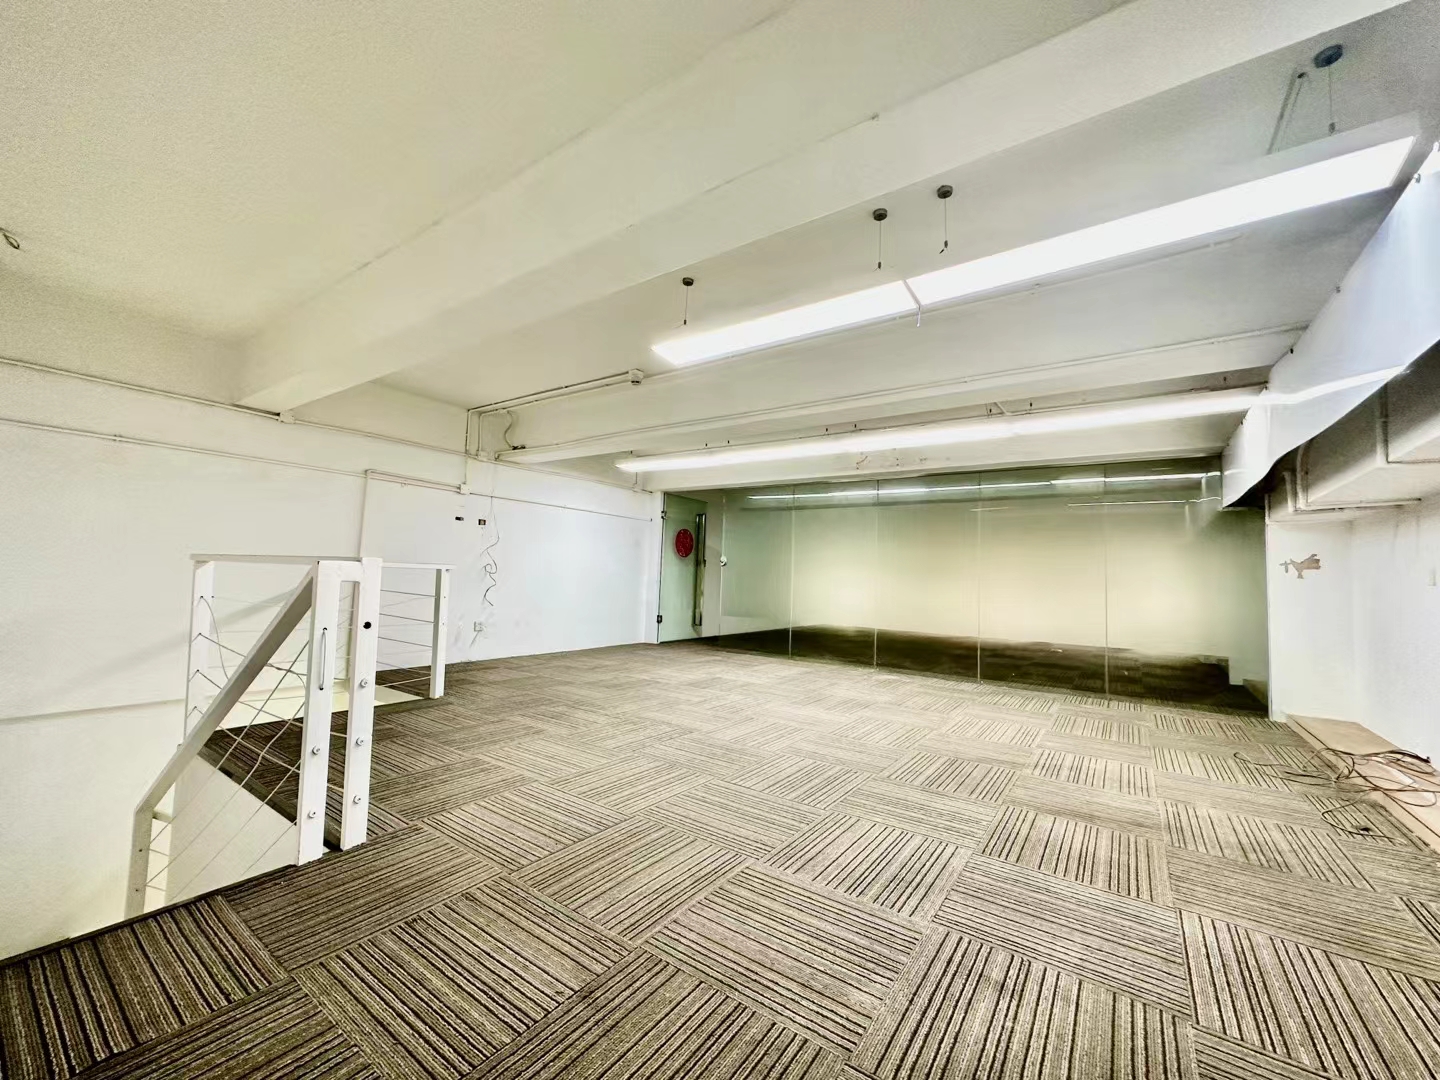 华侨城创意园稀缺loft复式办公室358平采光通透园区环境好